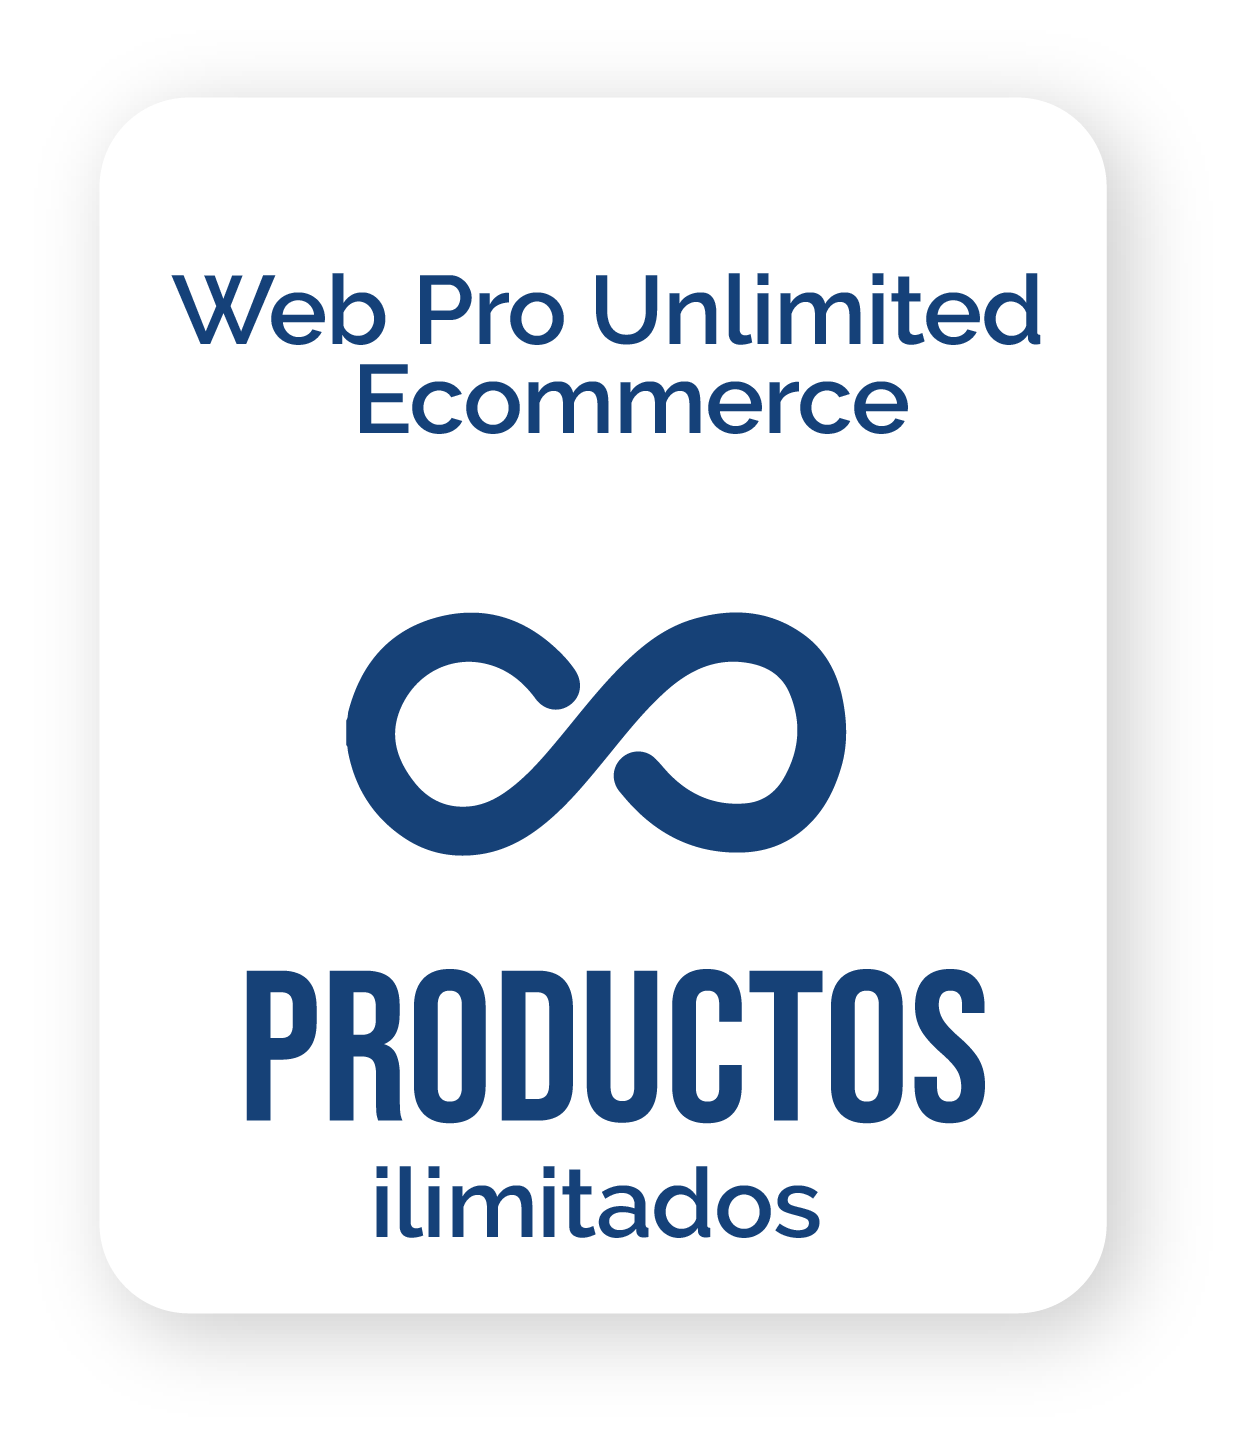 Un logotipo para web pro comercio electrónico ilimitado productos ilimitados